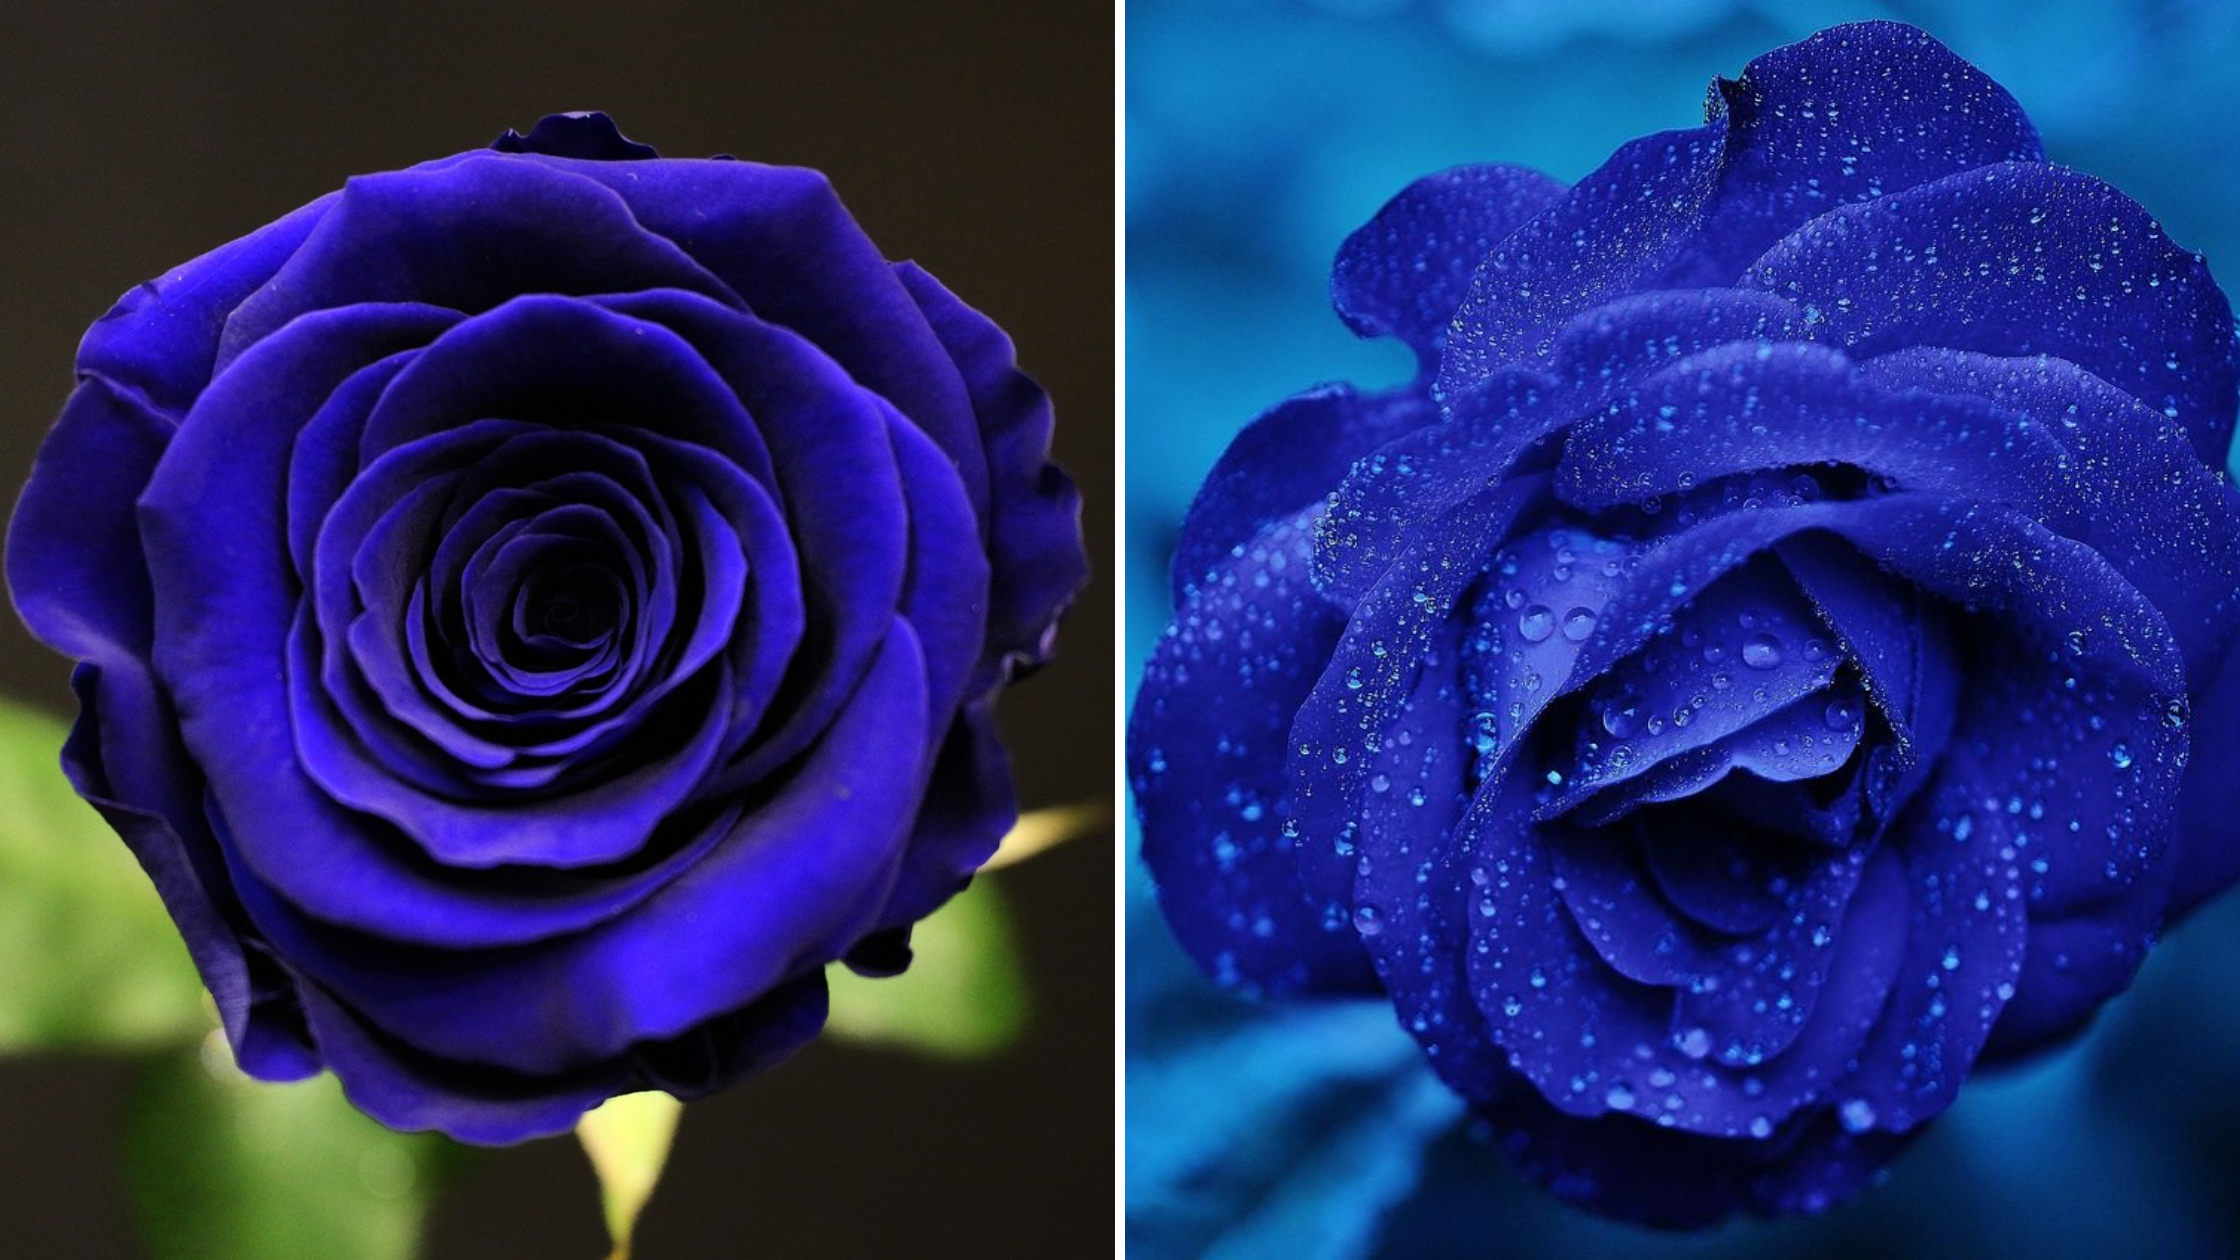 Que signifie la rose bleu ? | Rose & Elle